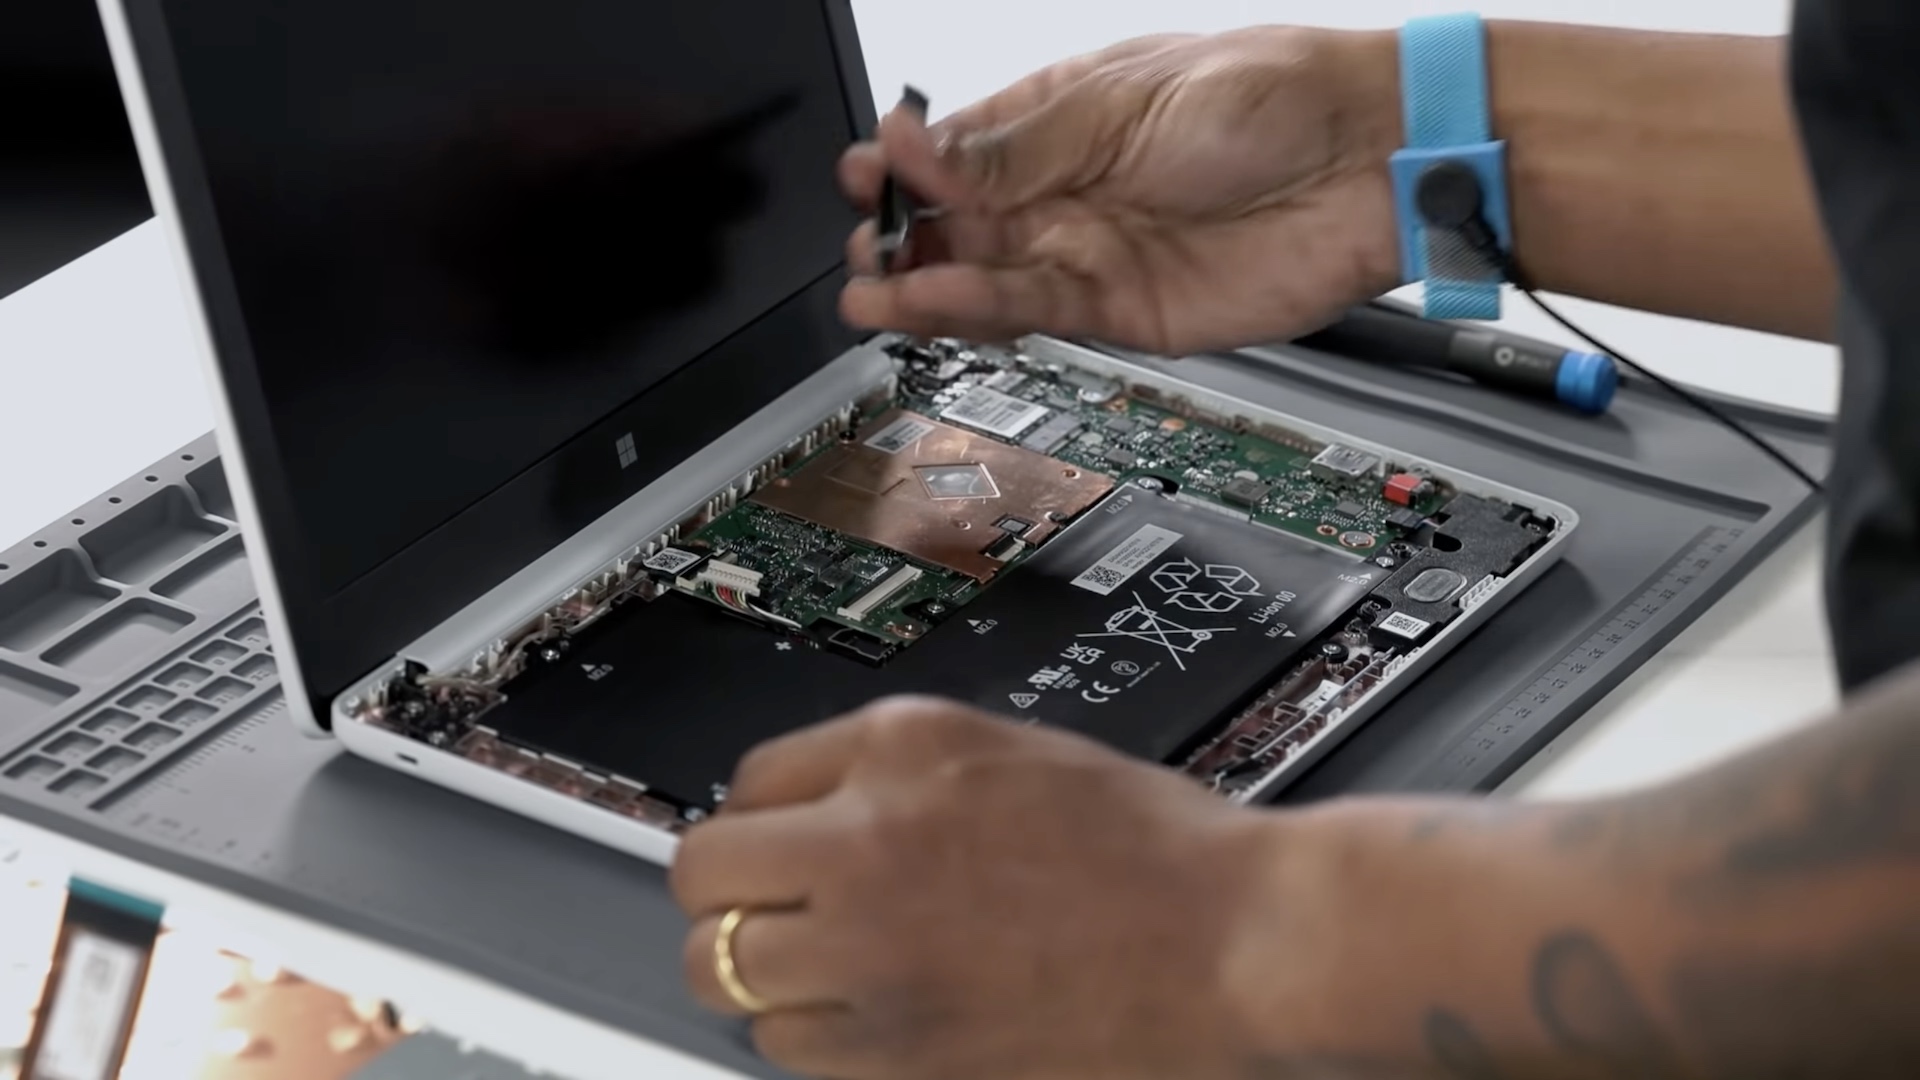 Microsoft ha iniziato a vendere pezzi di ricambio per i dispositivi Surface in modo che gli utenti possano effettuare da soli le riparazioni fuori garanzia.